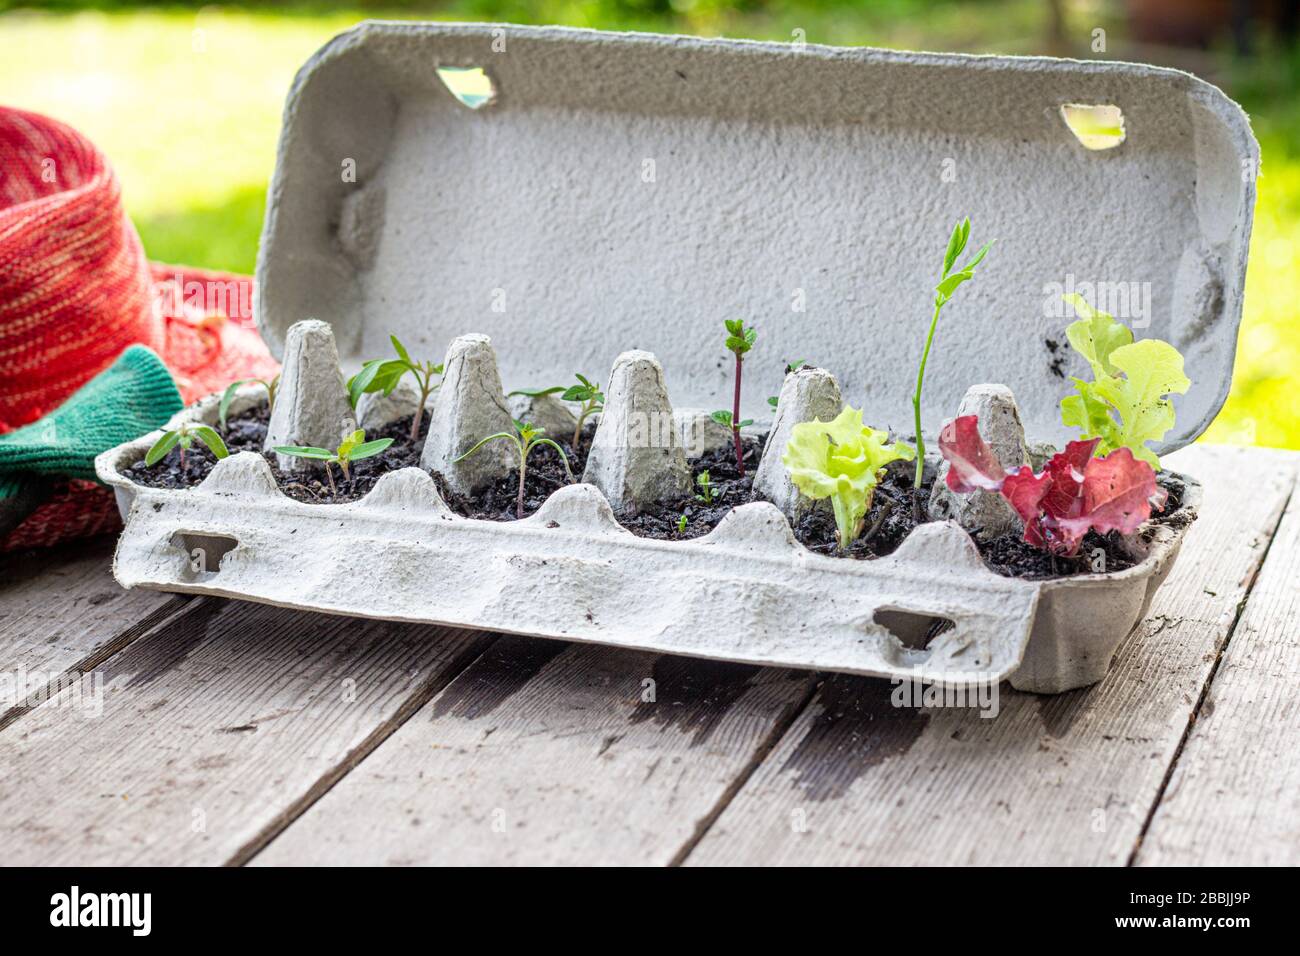 Les semis de légumes qui poussent dans la boîte à œufs réutilisée à l'extérieur de la table de jardin. Recyclez, réutilisez pour réduire les déchets et cultiver vos propres aliments. Banque D'Images